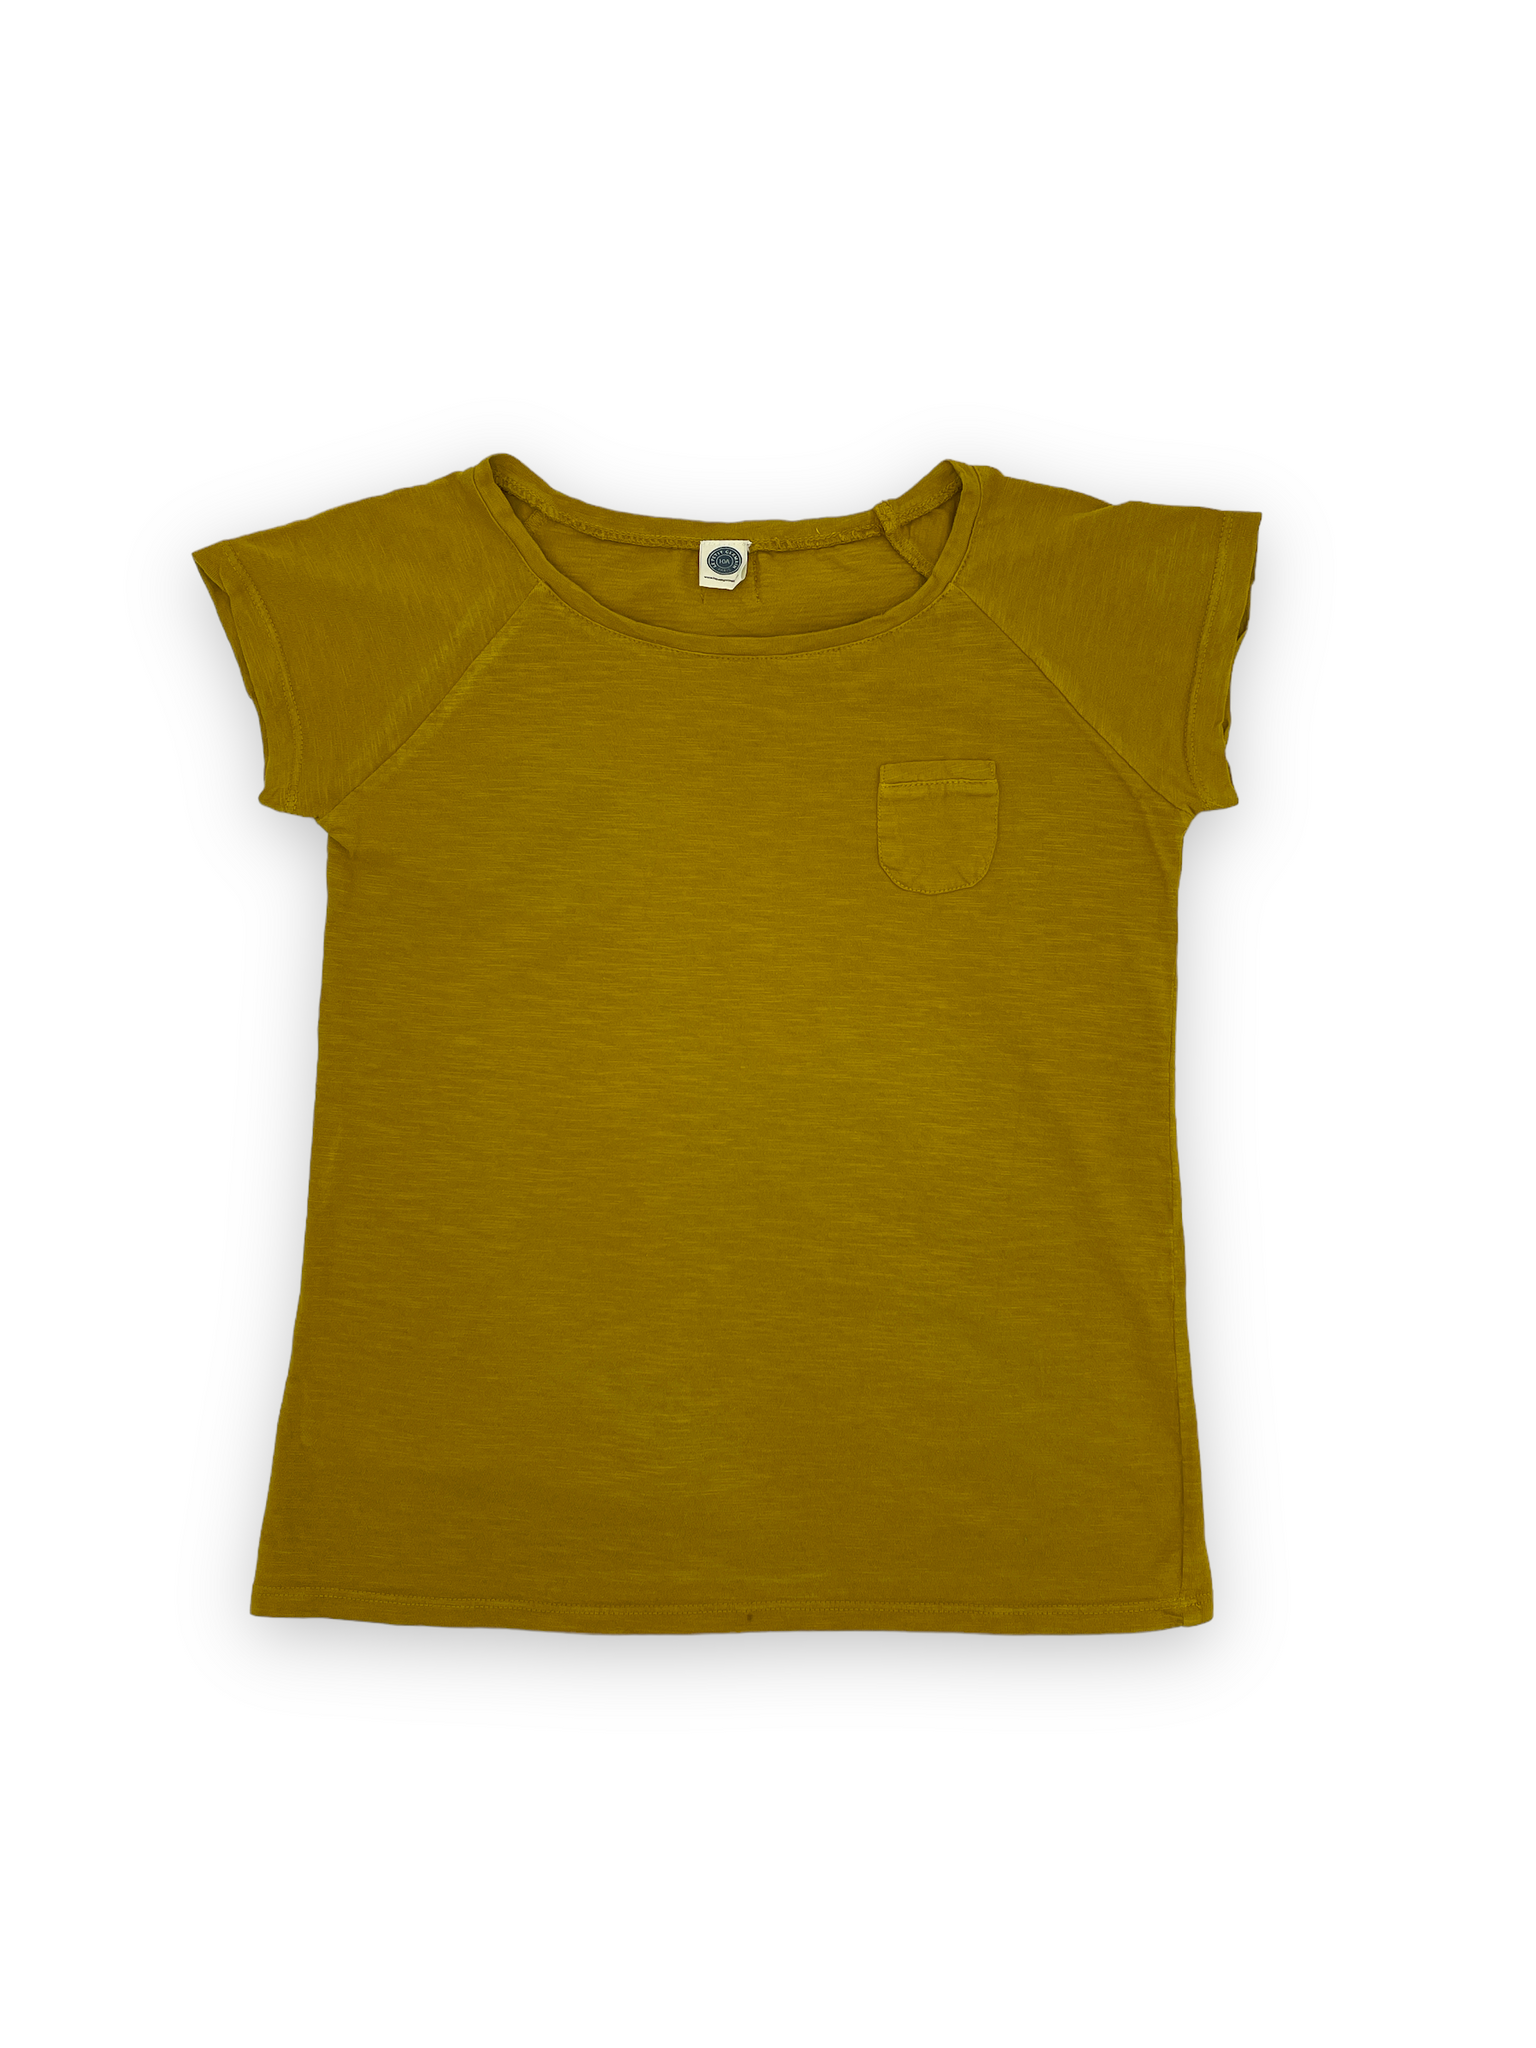 T-shirt Le petit germain 10 ans